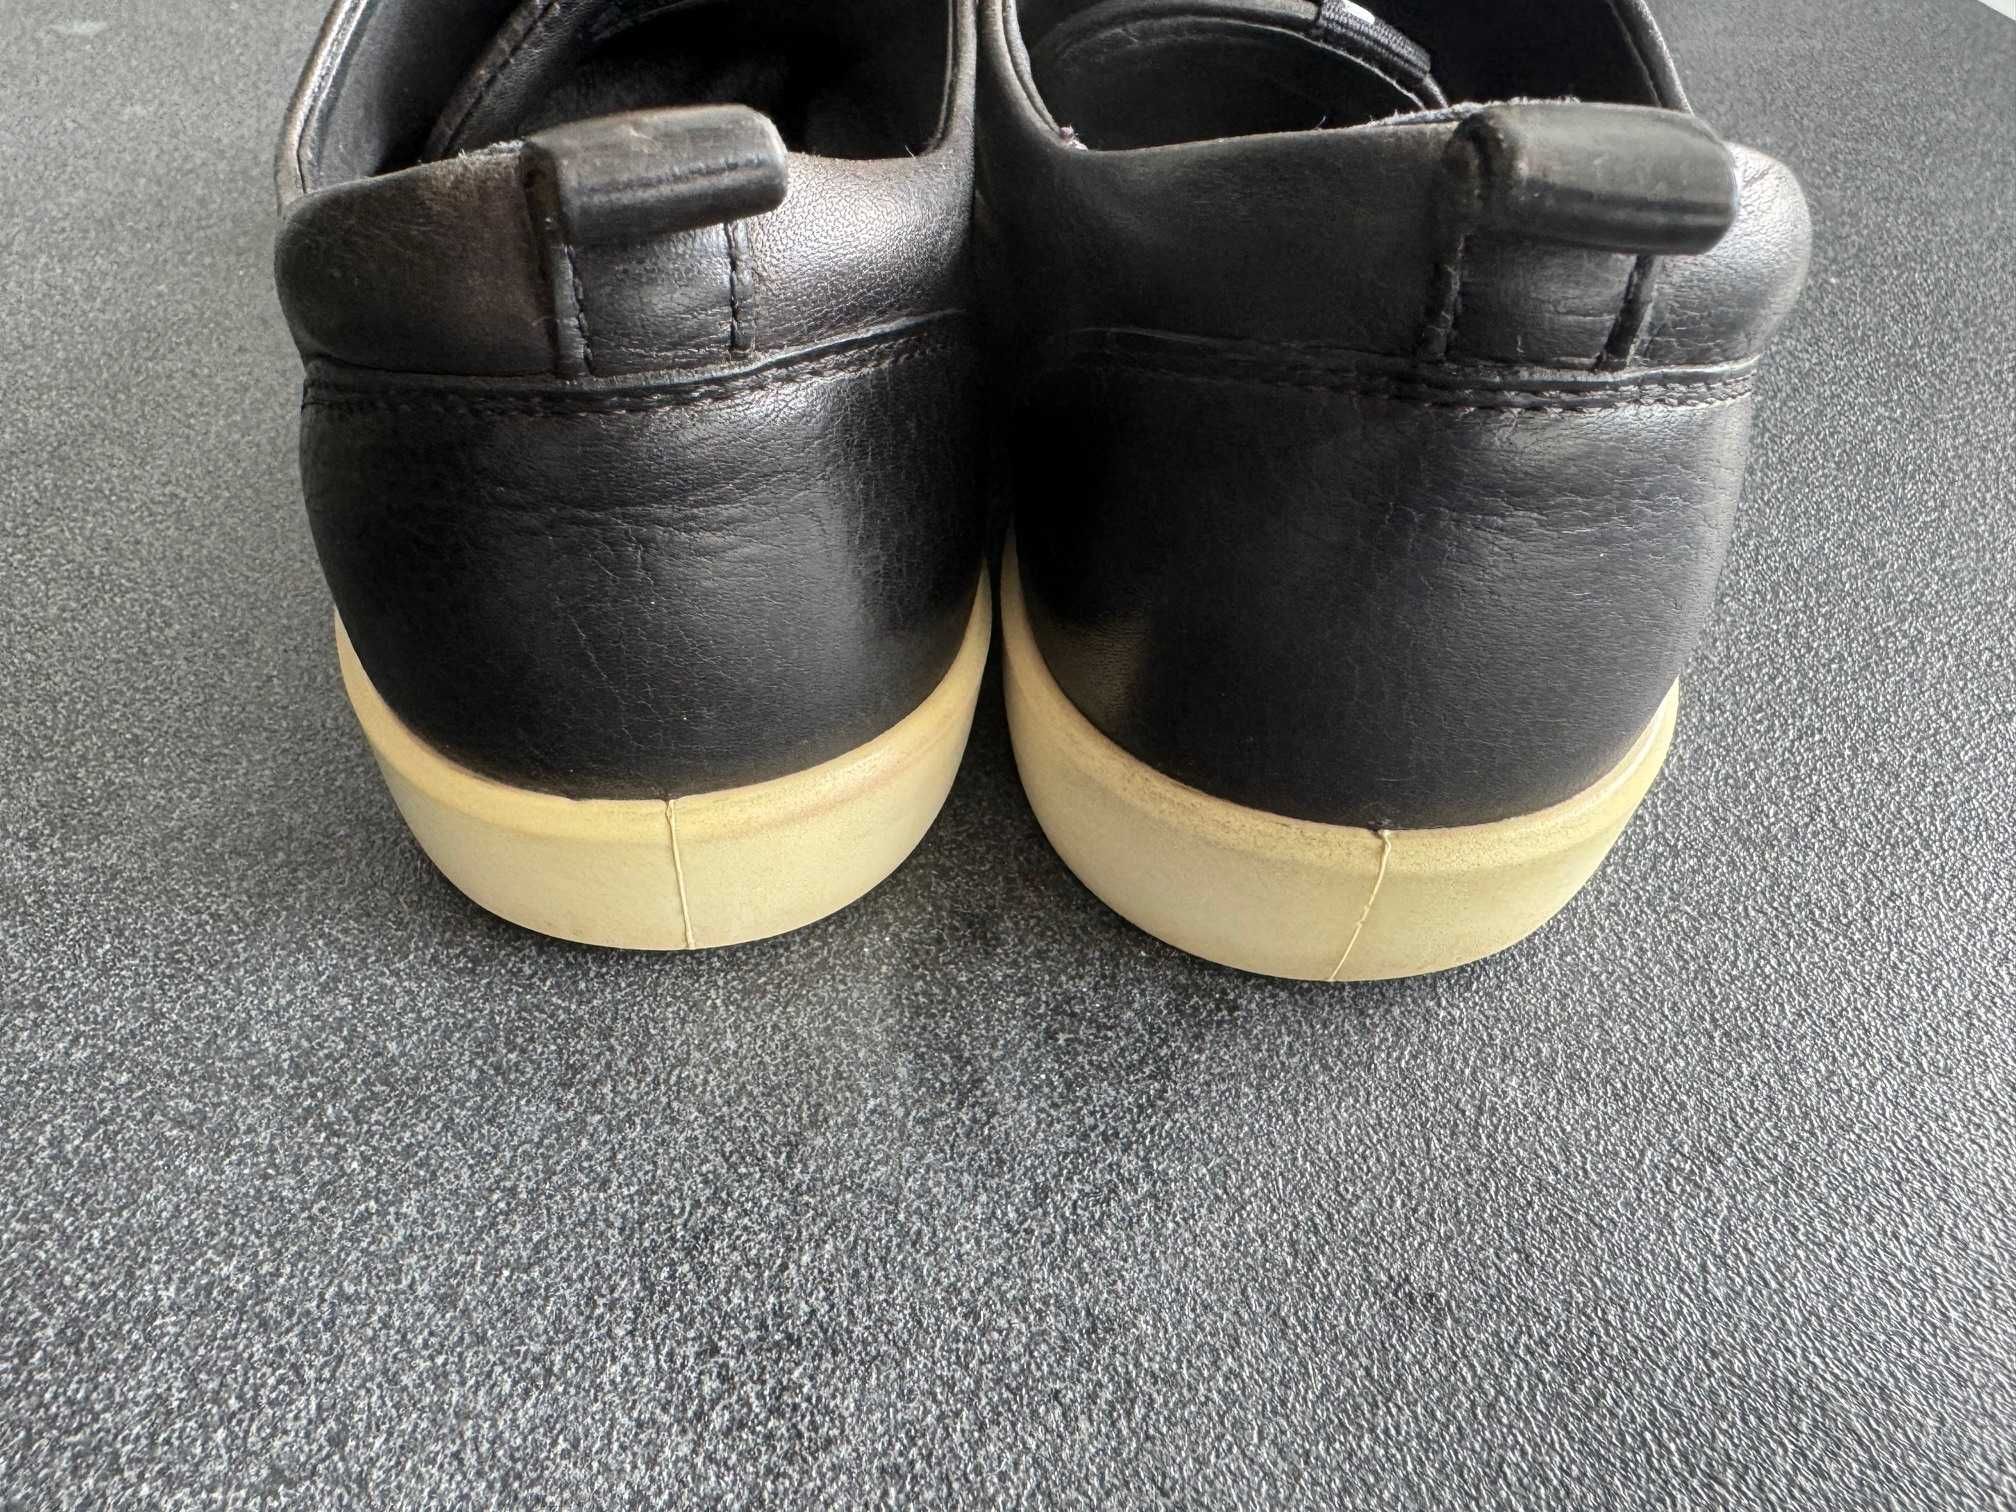 Espadrile / pantofi ECCO culoare negru masura 39